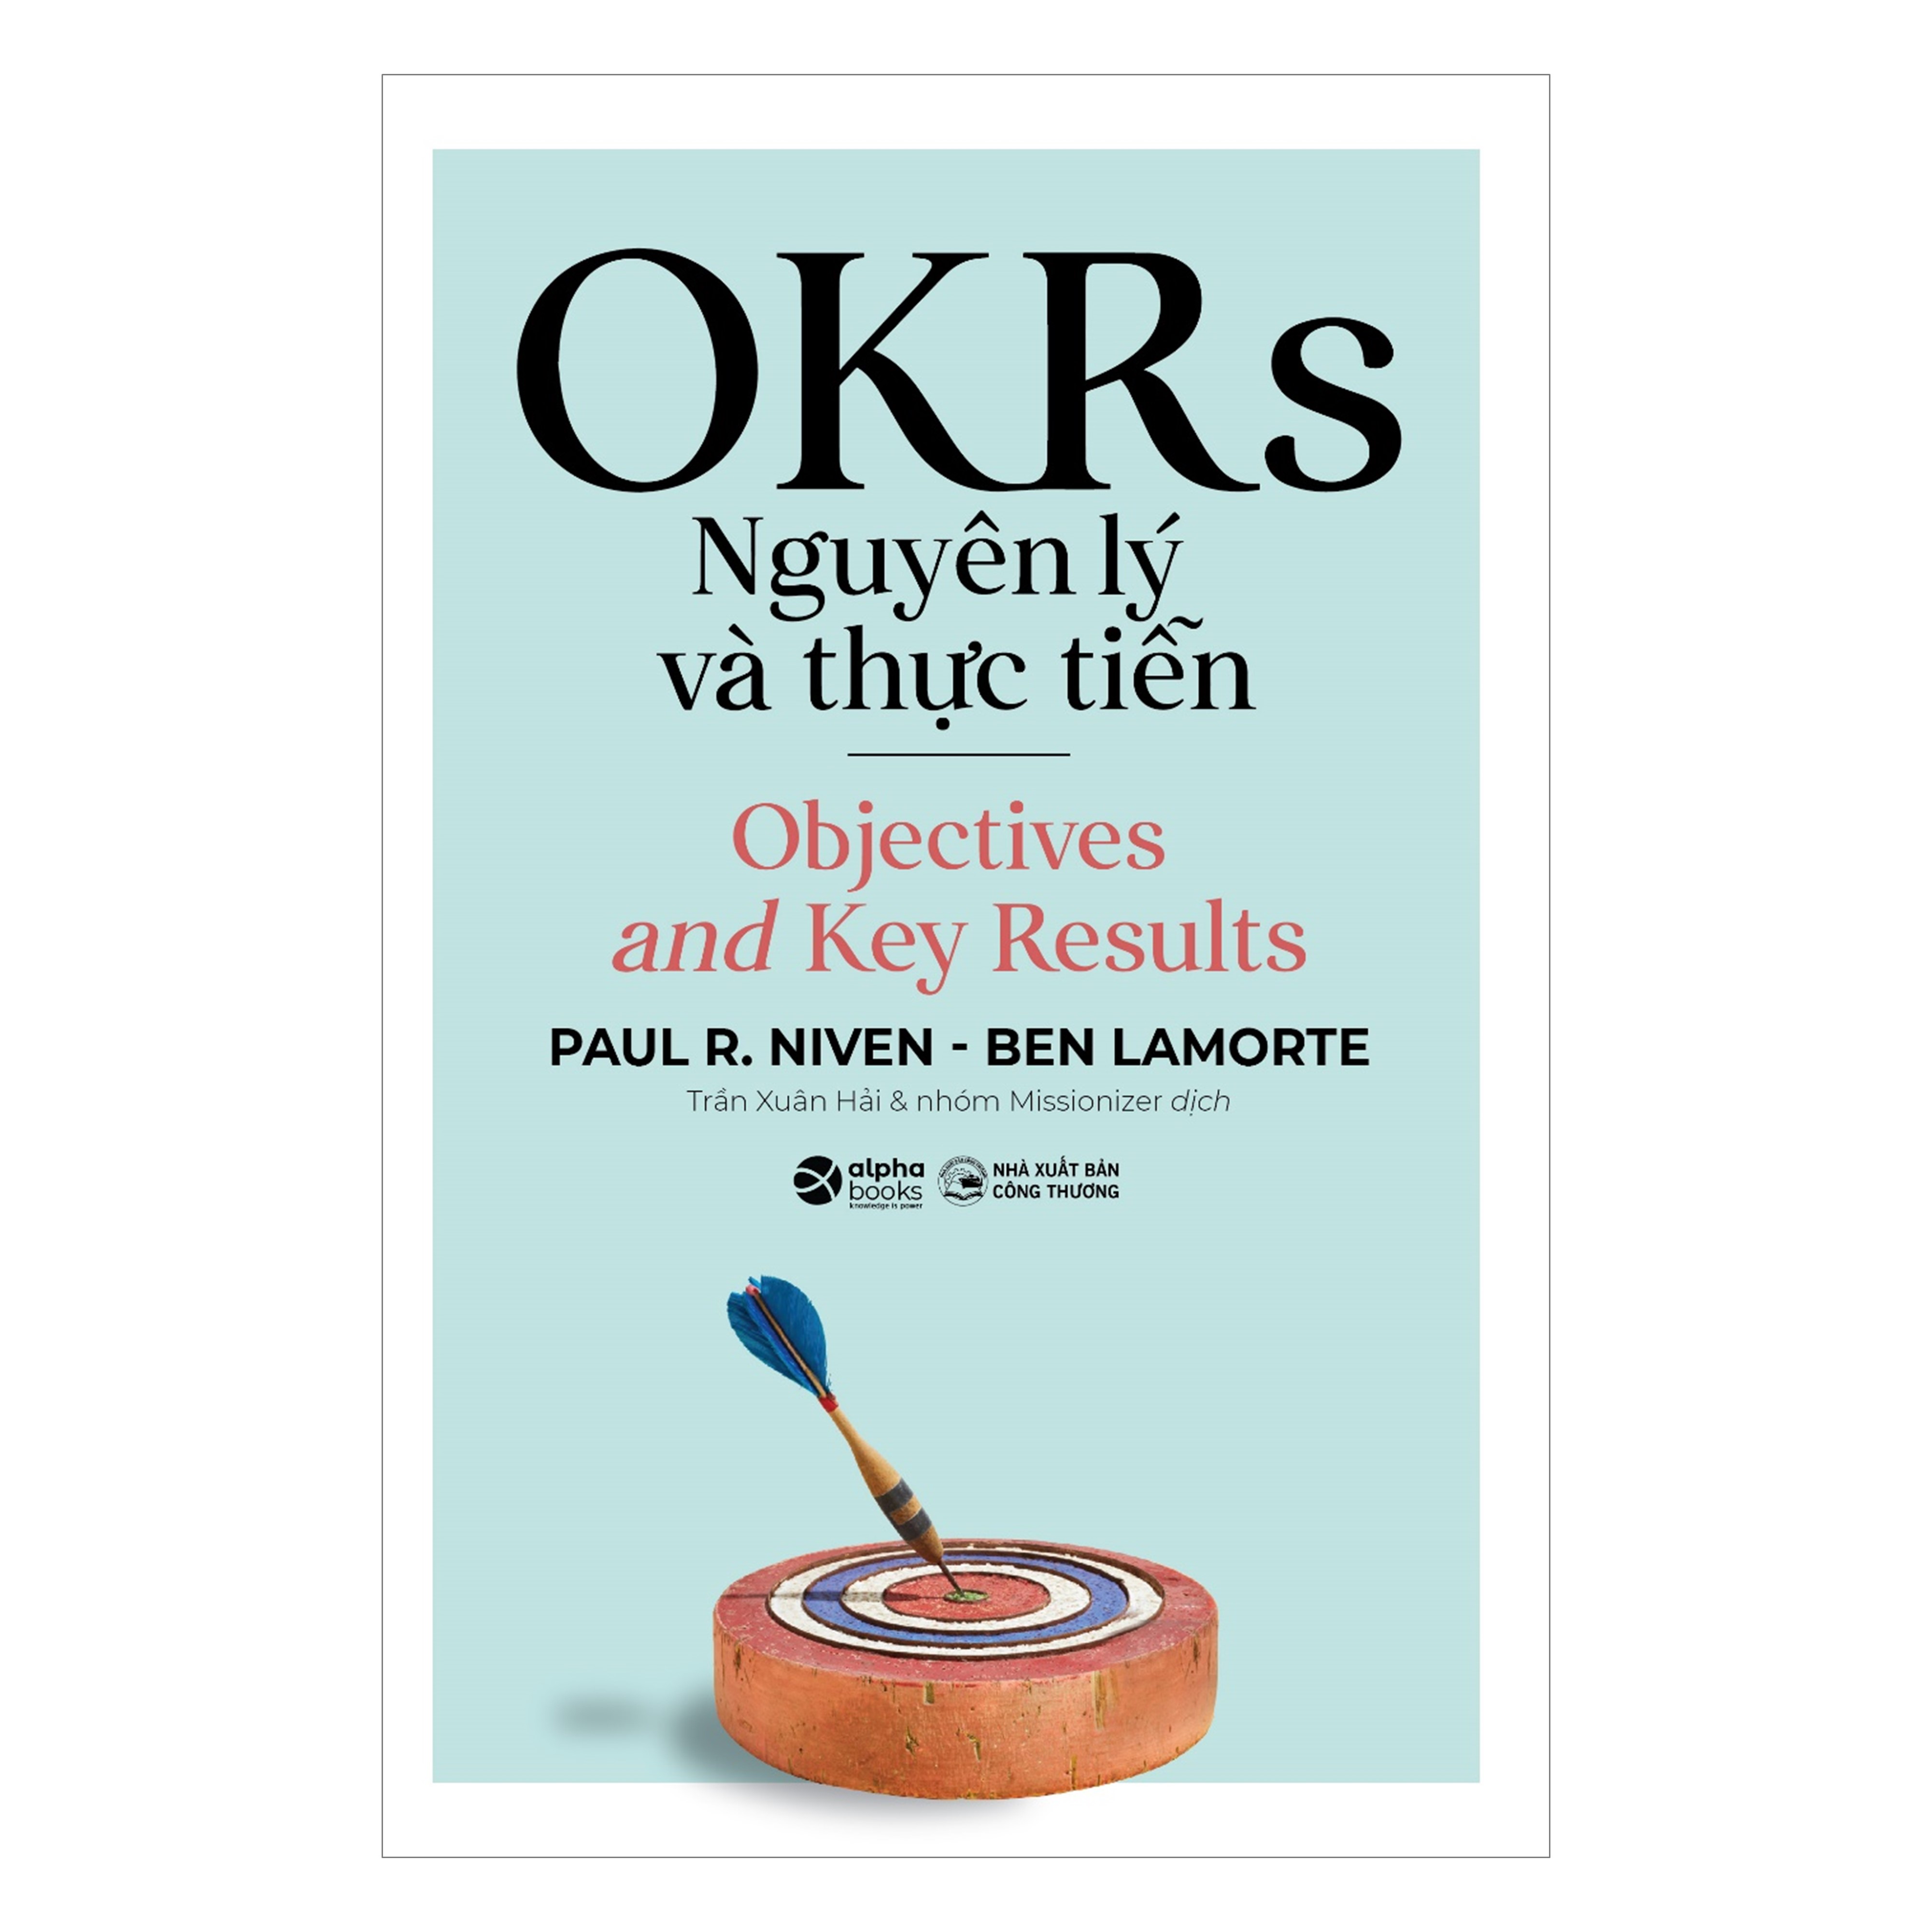 Hình ảnh Combo OKRs Nguyên Lý Và Thực Tiễn + Trí Tuệ Xúc Cảm + Chiến Lược Kết Nối